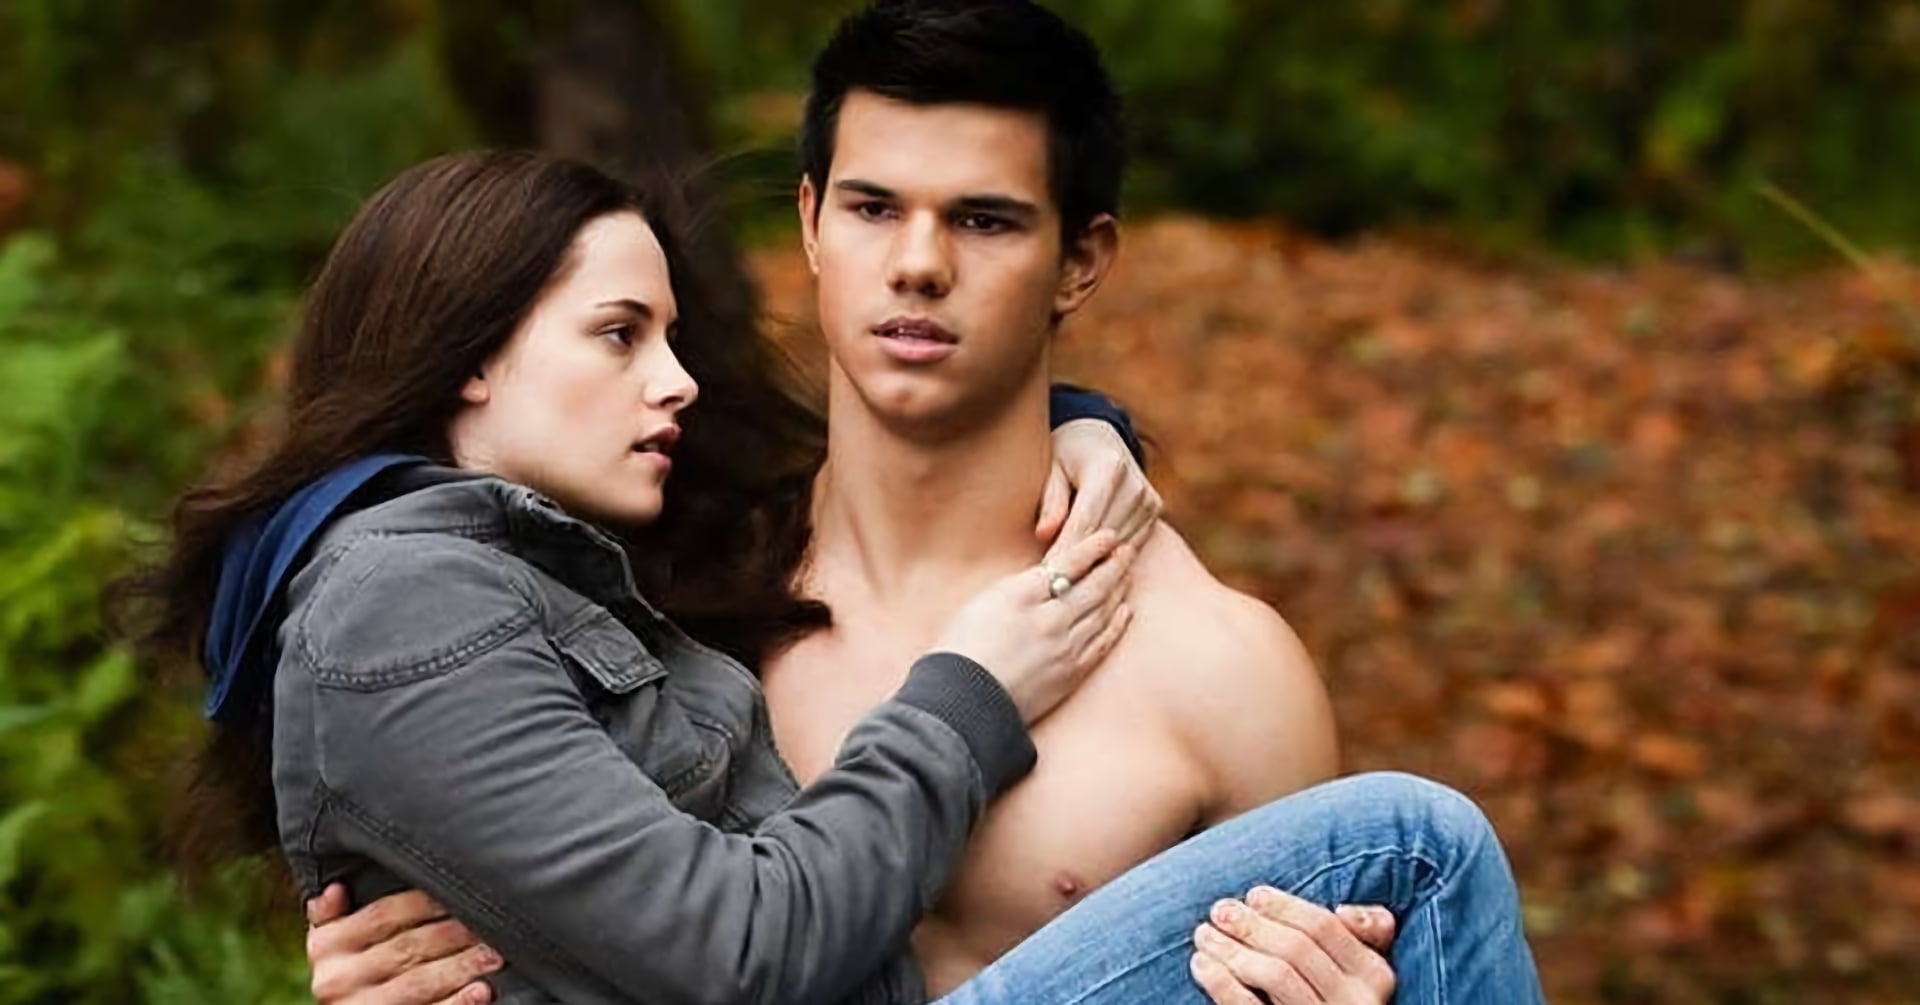 Taylor Lautner เผย ‘กลัว’ การออกจากบ้านอยู่หลายปี เพราะหนังเรื่อง ‘Twilight’